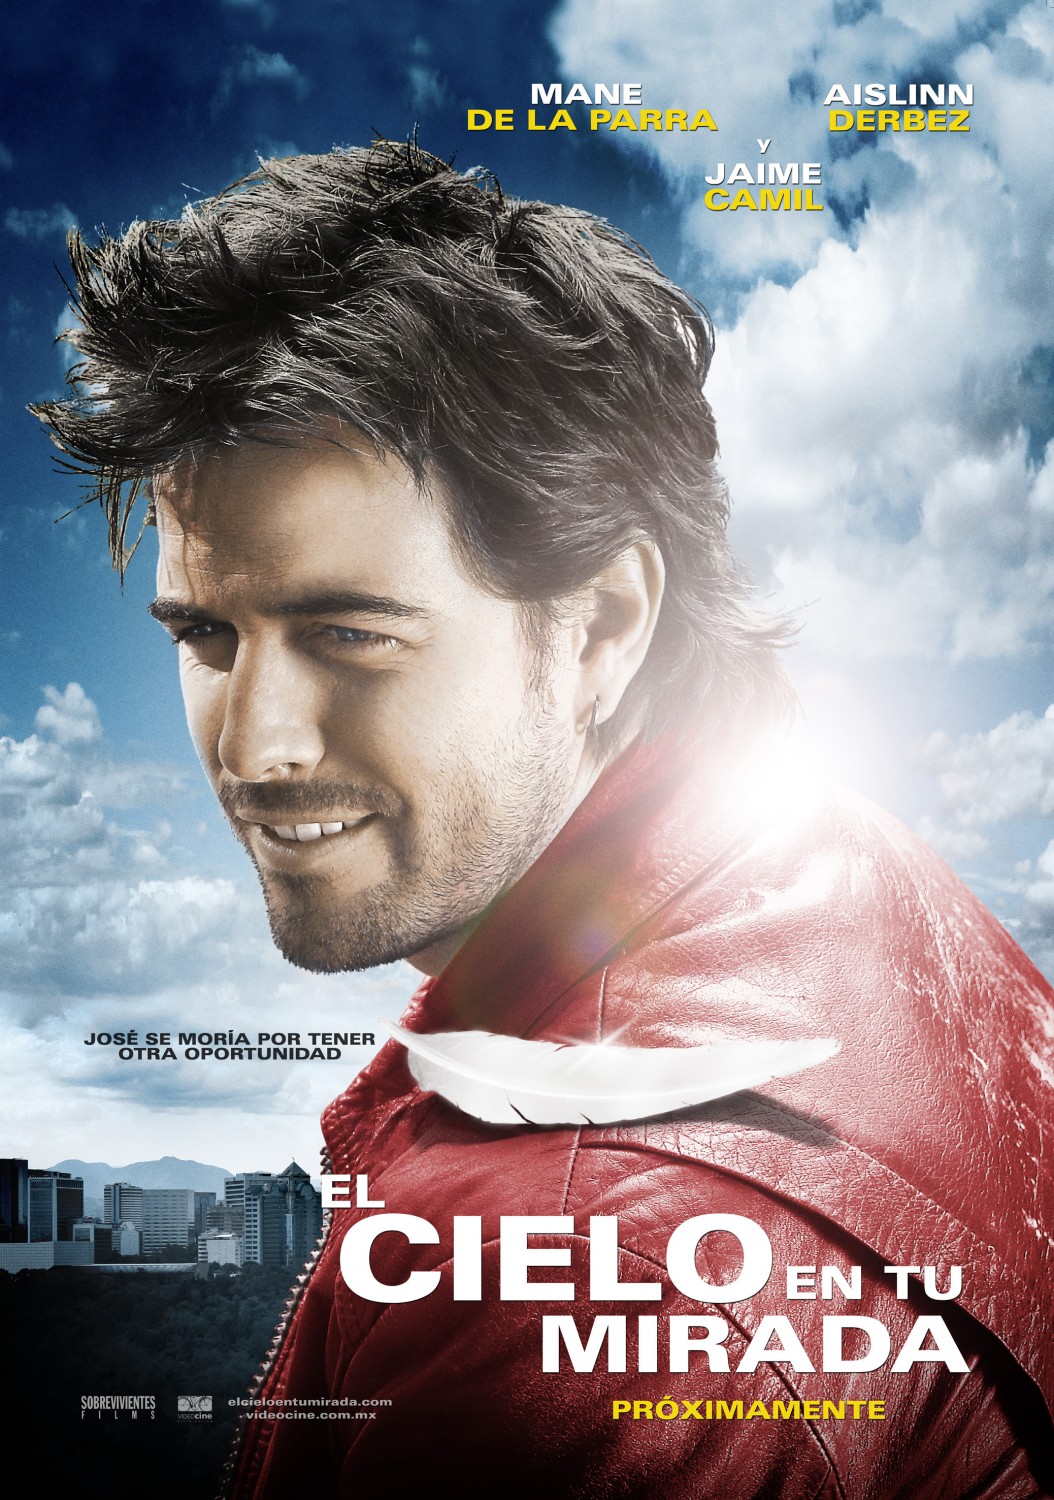 Extra Large Movie Poster Image for El cielo en tu mirada (#2 of 3)